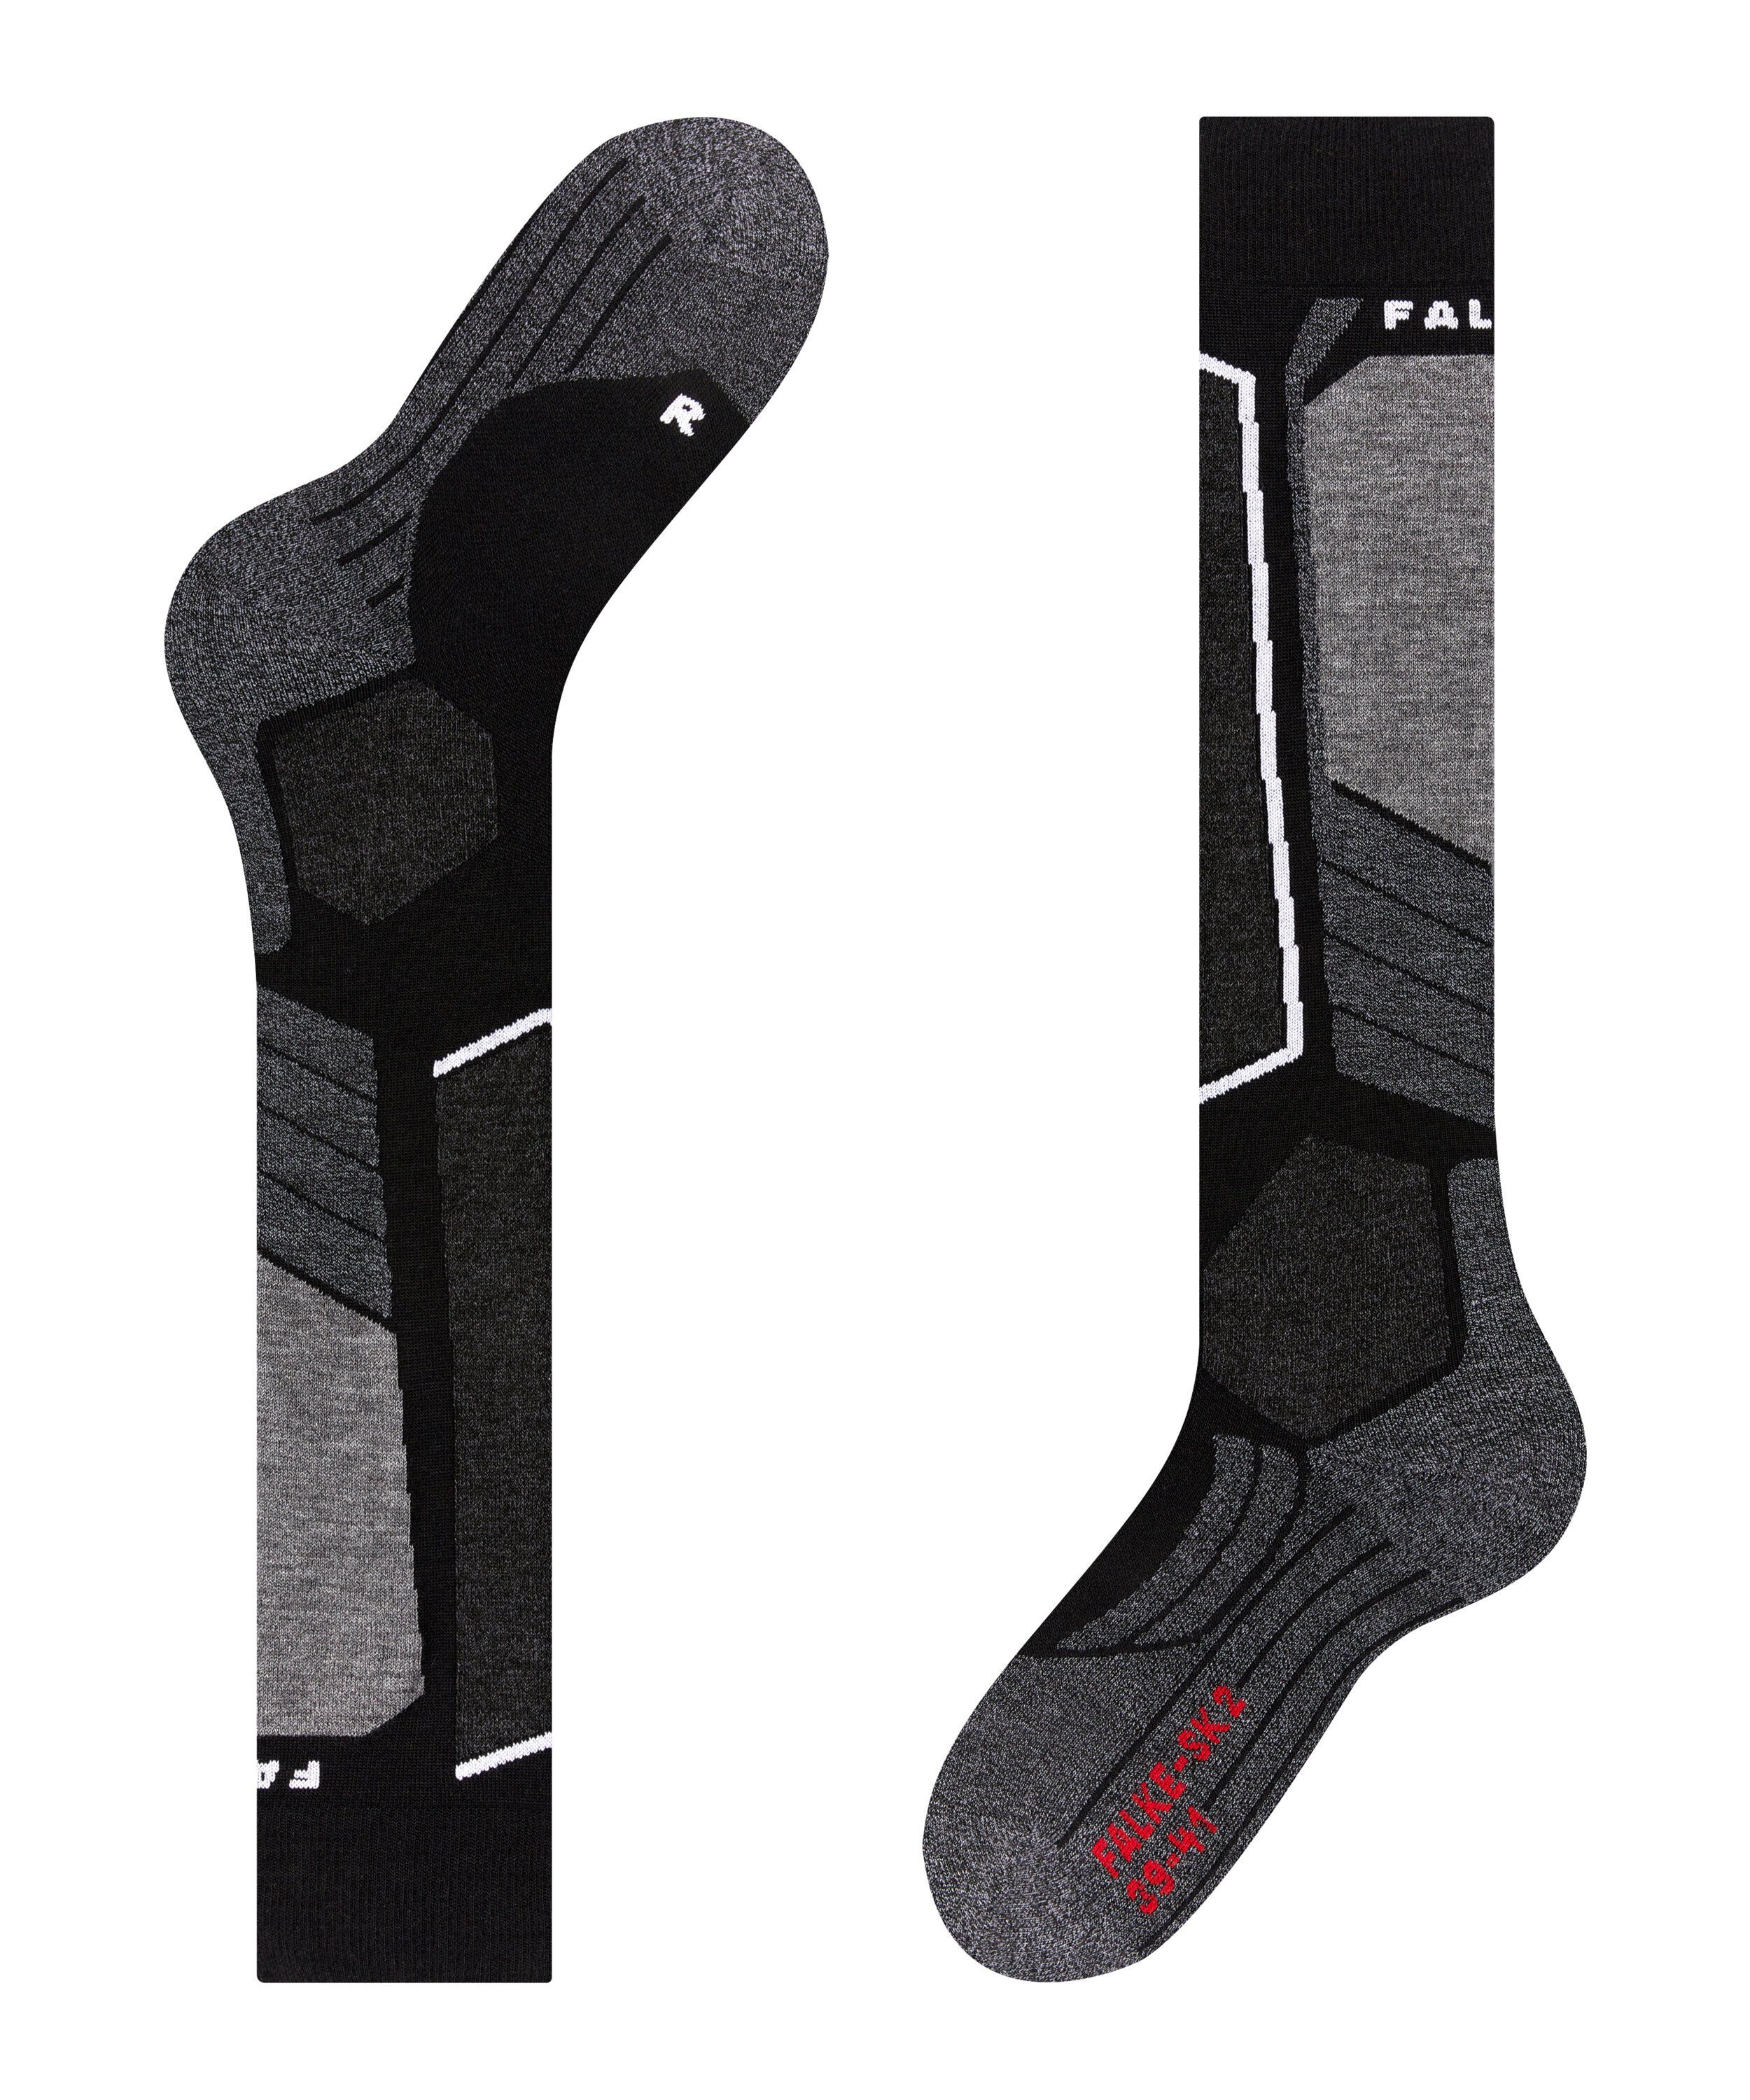 FALKE Skisocken SK2 Intermediate (1-Paar) für Komfort und Kontrolle mittelstarker (3010) black-mix Polsterung mit